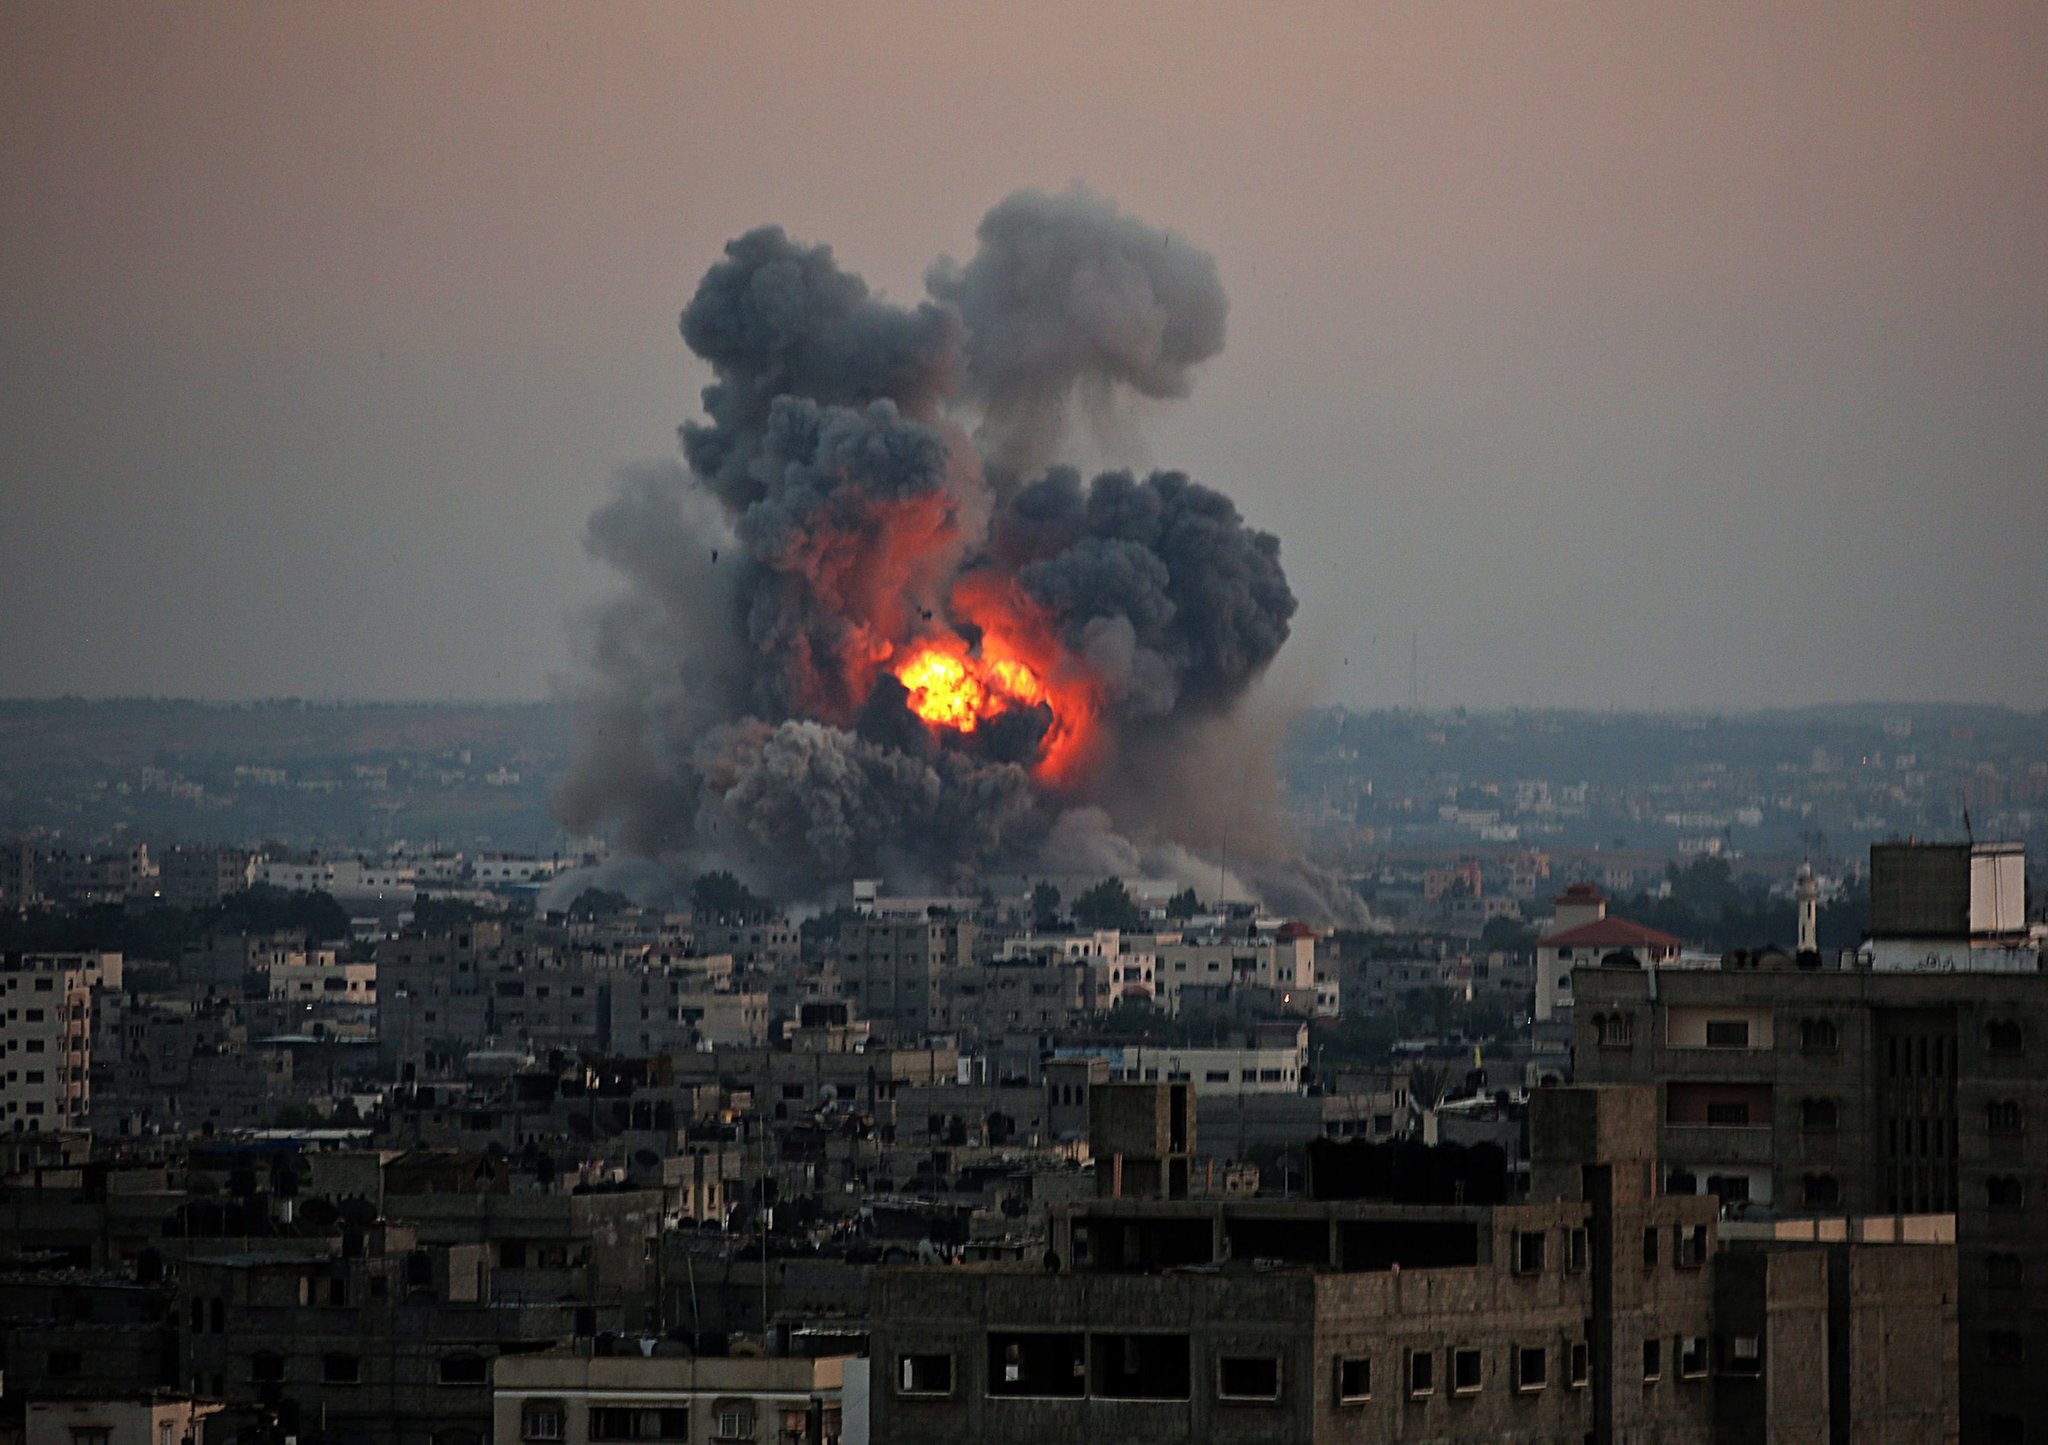 8/7/2014: Συναγερμός στη Μέση Ανατολή – Οι Ισραηλινοί «ισοπεδώνουν» τη Γάζα (βίντεο)